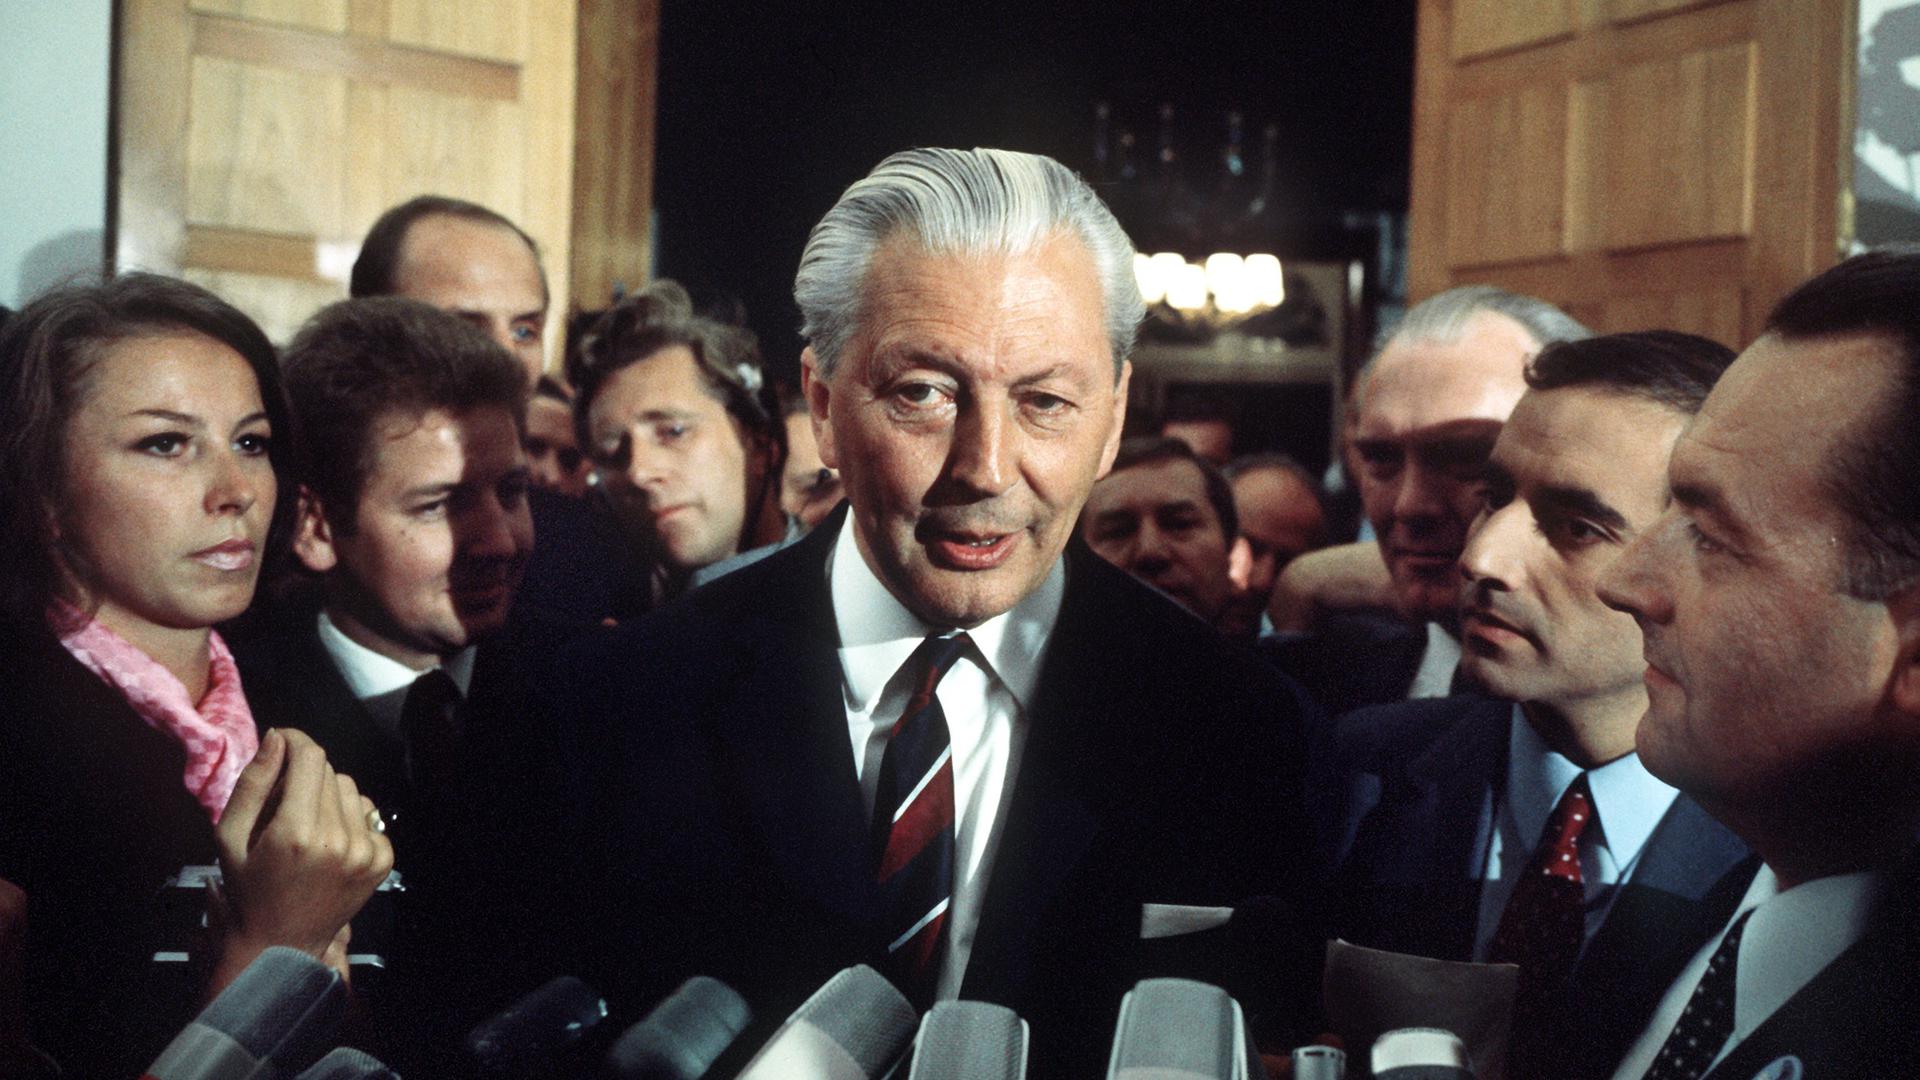 ARCHIV - Bundeskanzler Kurt Georg Kiesinger (CDU) wird am Wahlabend 28.9.1969 im Kanzleramt in Bonn von Vertretern der Presse umringt.